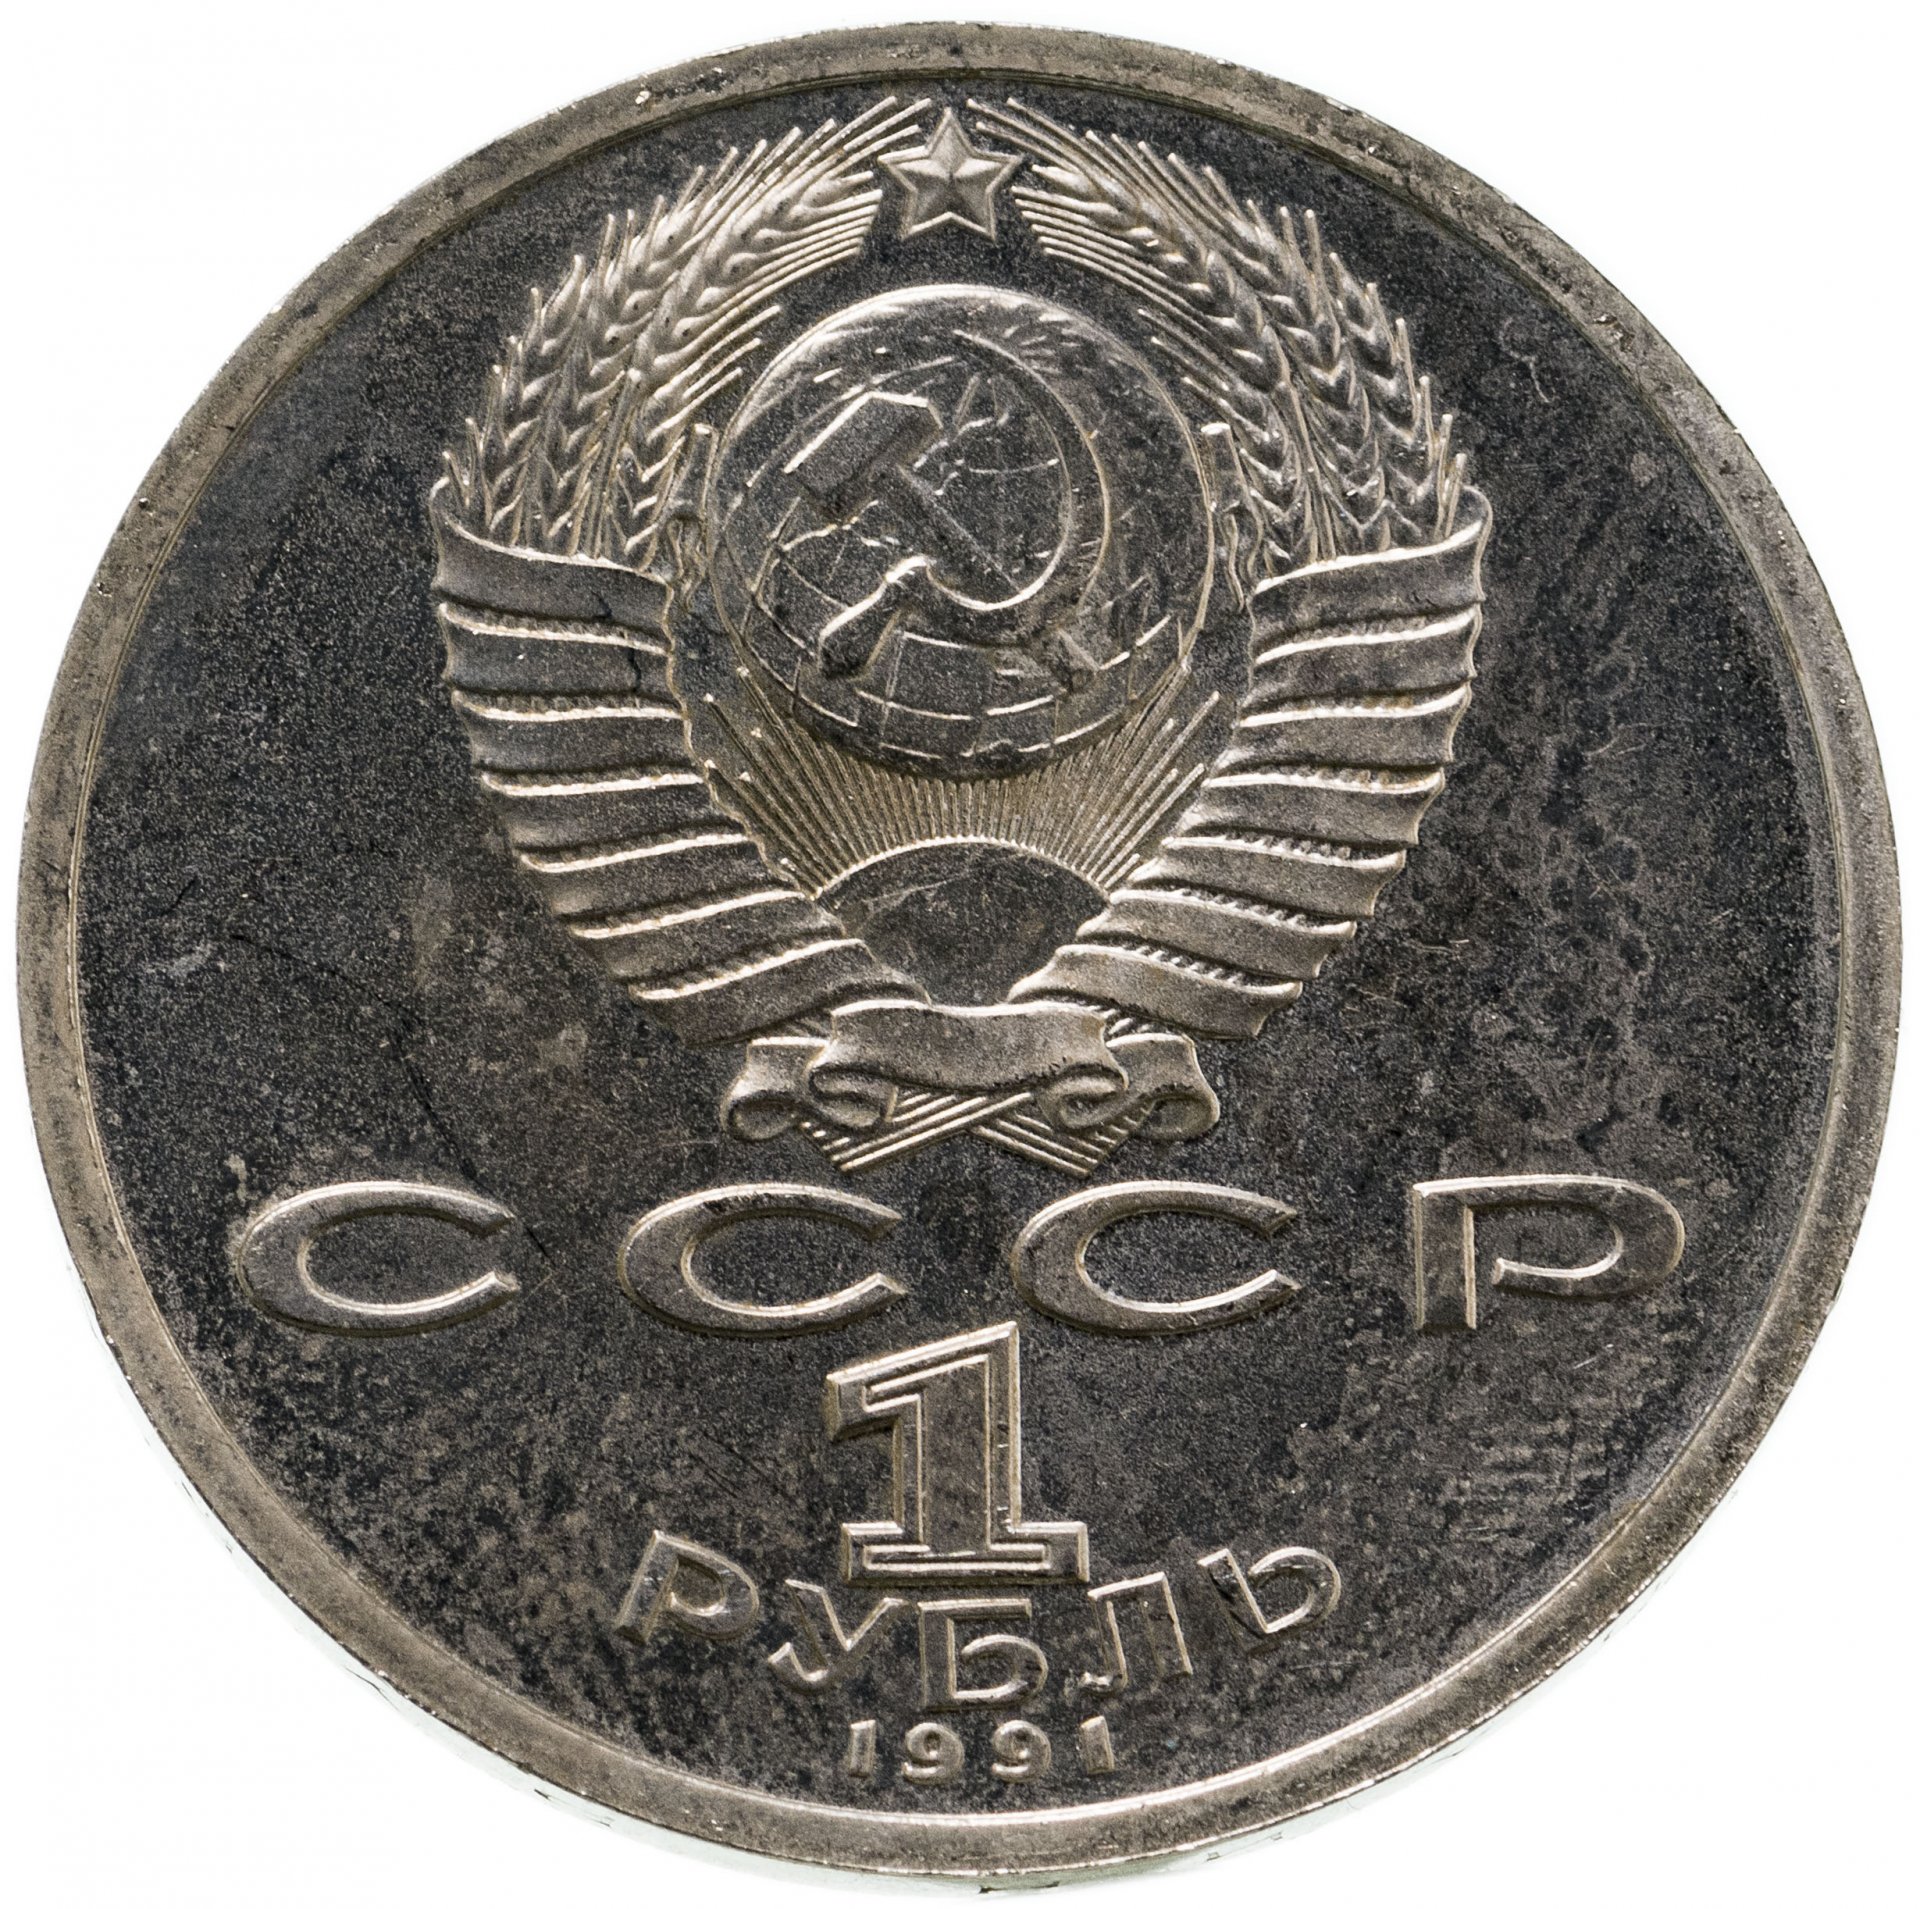 Стоимость монет 1990 года. Советские металлические рубли. Коллекционные монеты 1 рубль. Монеты СССР 1991 года. Рубль 1991 года.